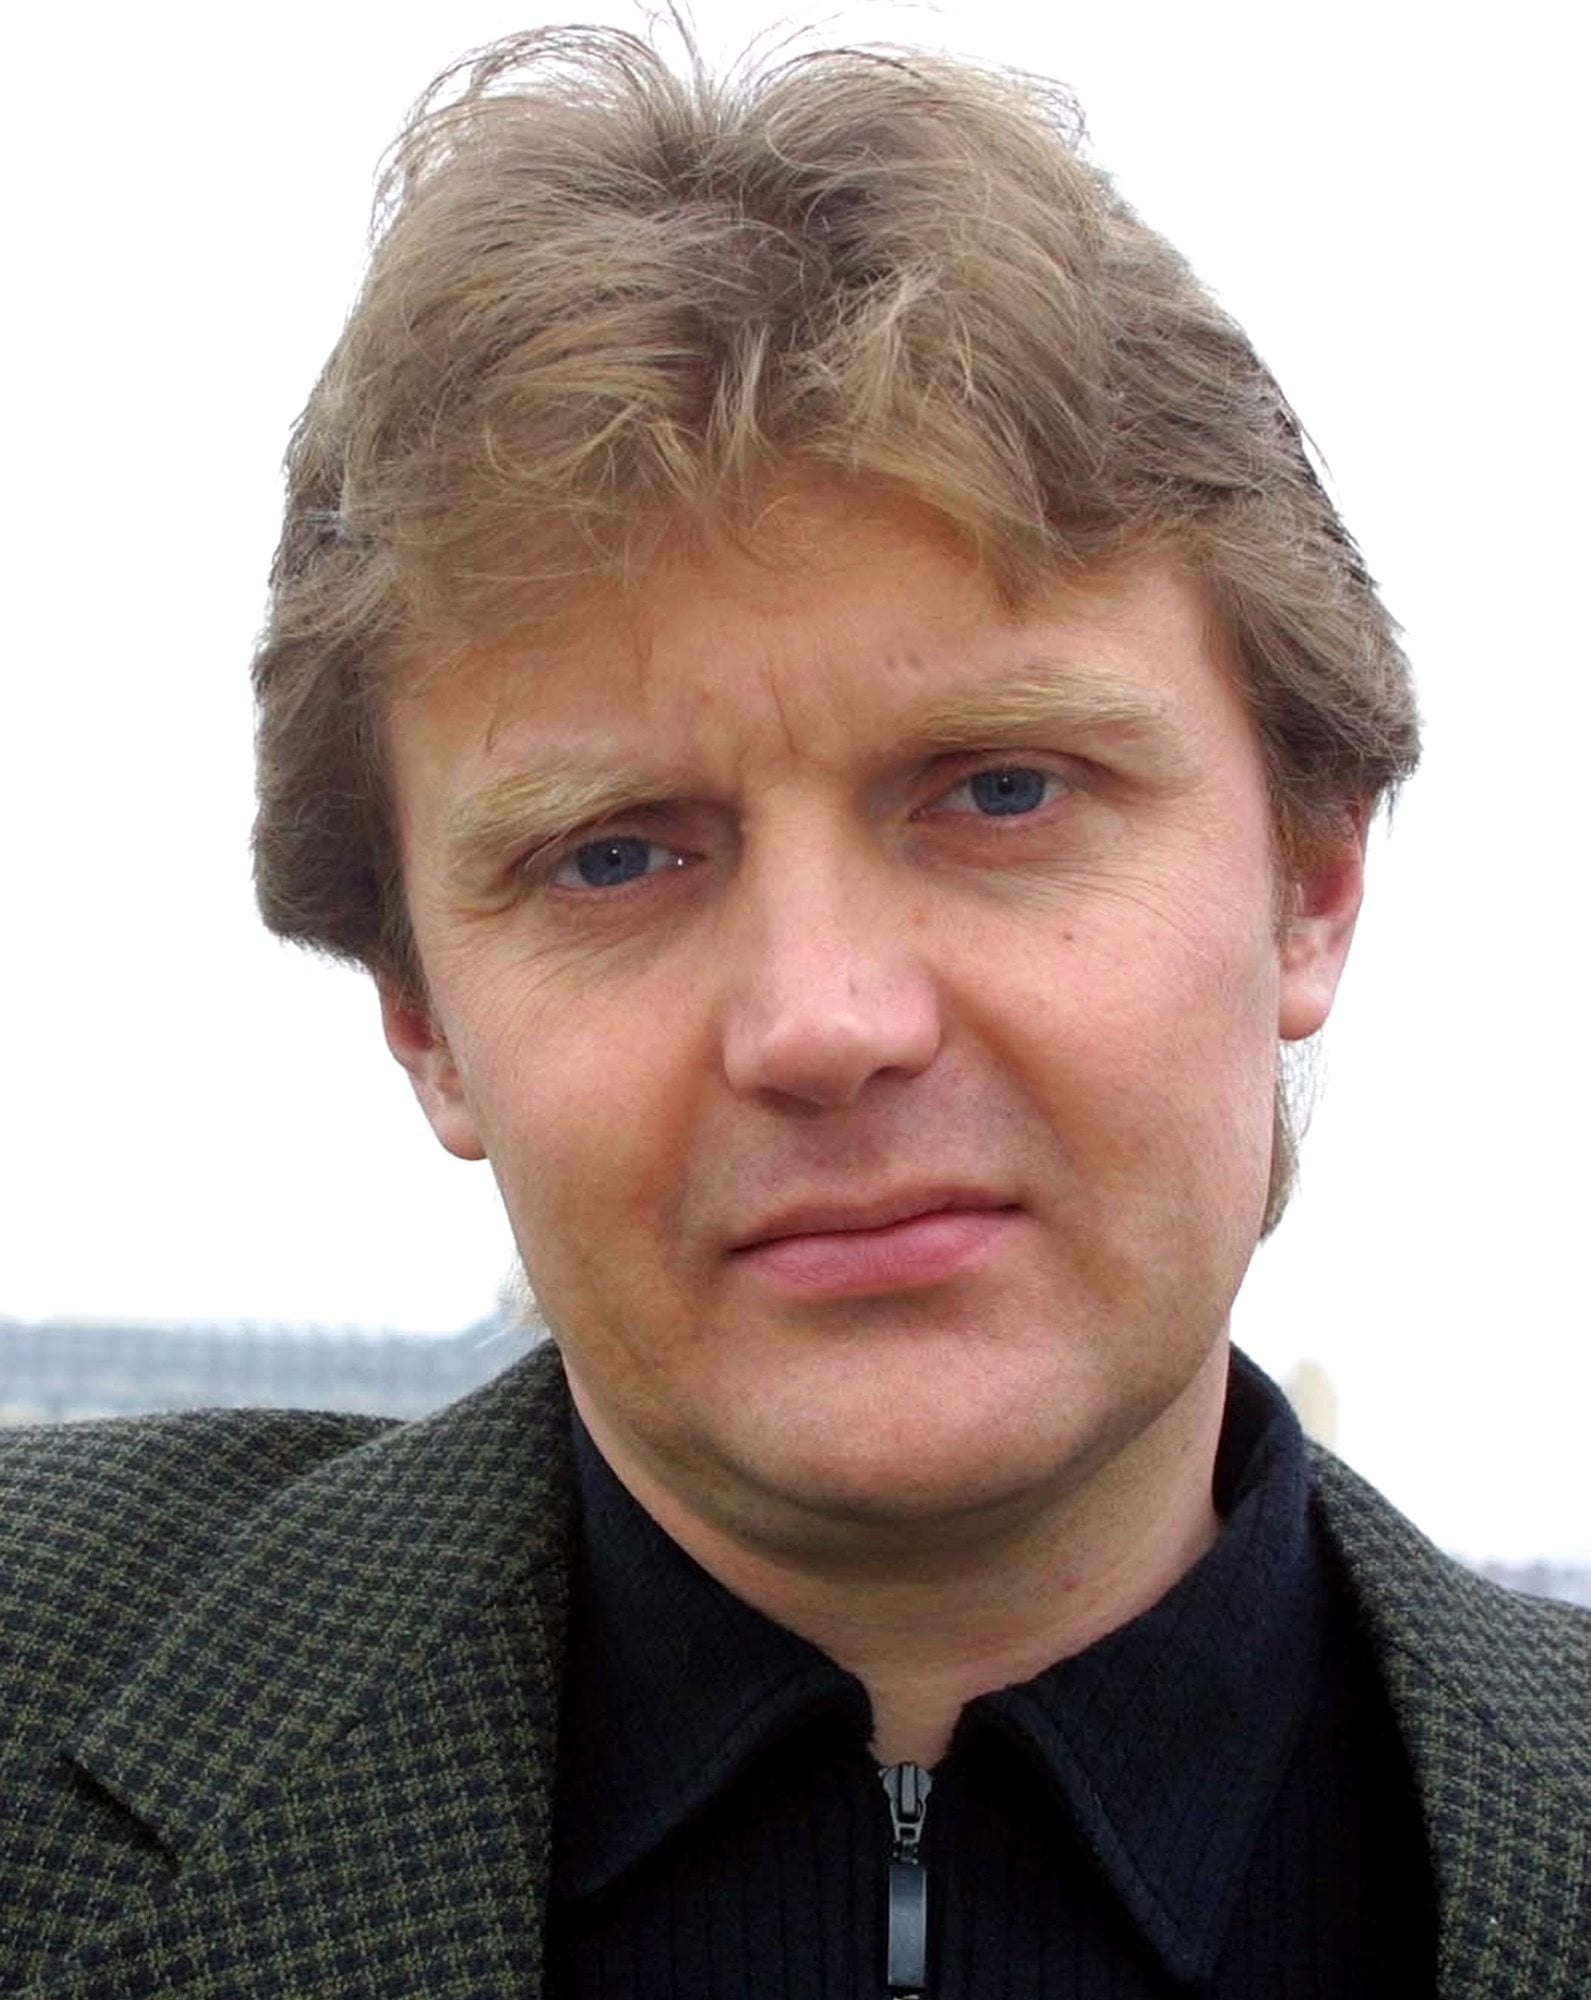 Alexander Litvinenko
Died in 2006 (MATT DUNHAM/Associated Press)